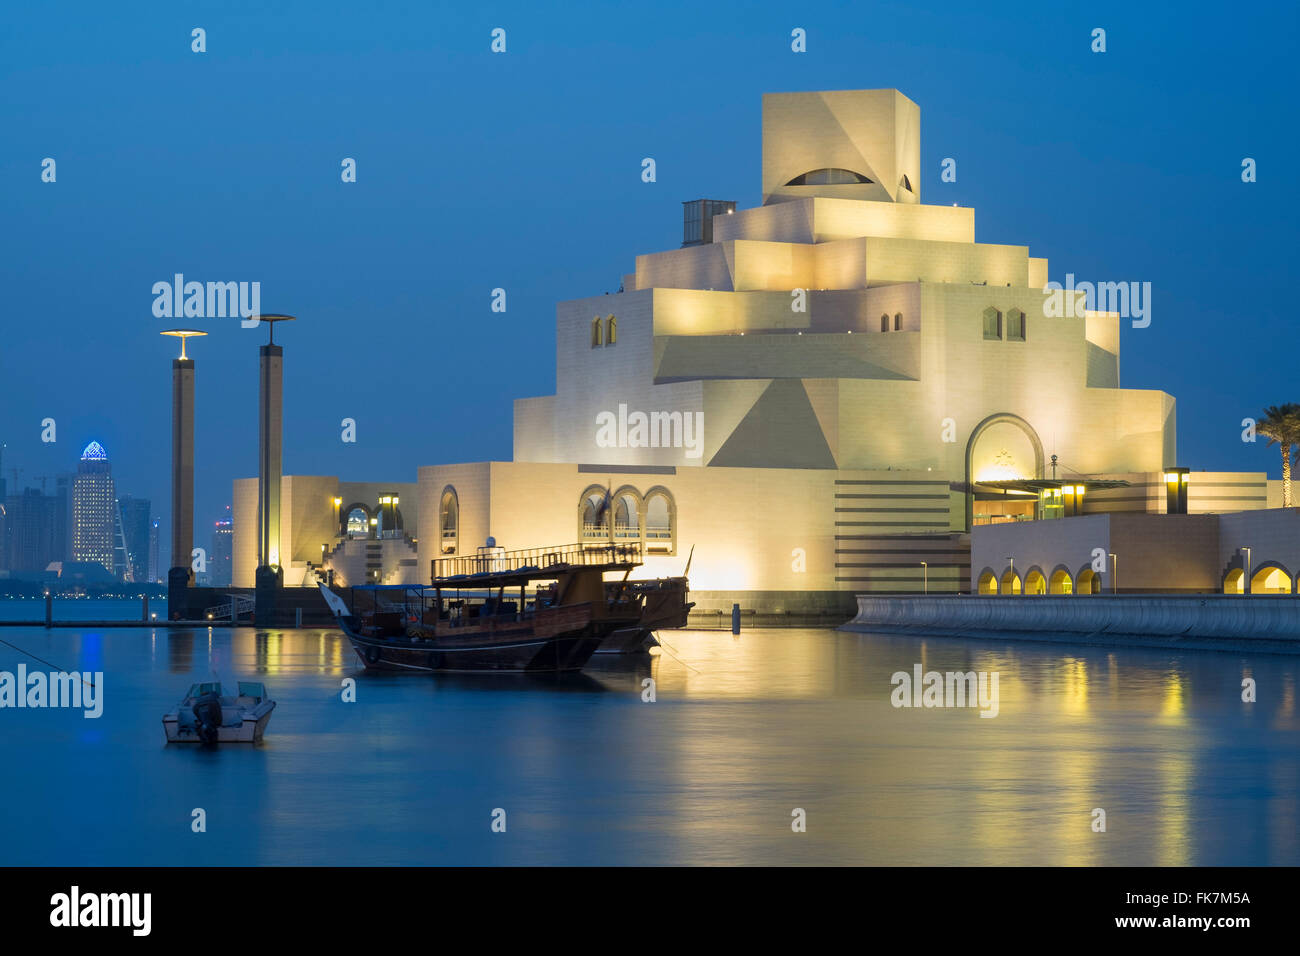 Ansicht des beleuchteten Museum für islamische Kunst in Doha Katar Abend Stockfoto